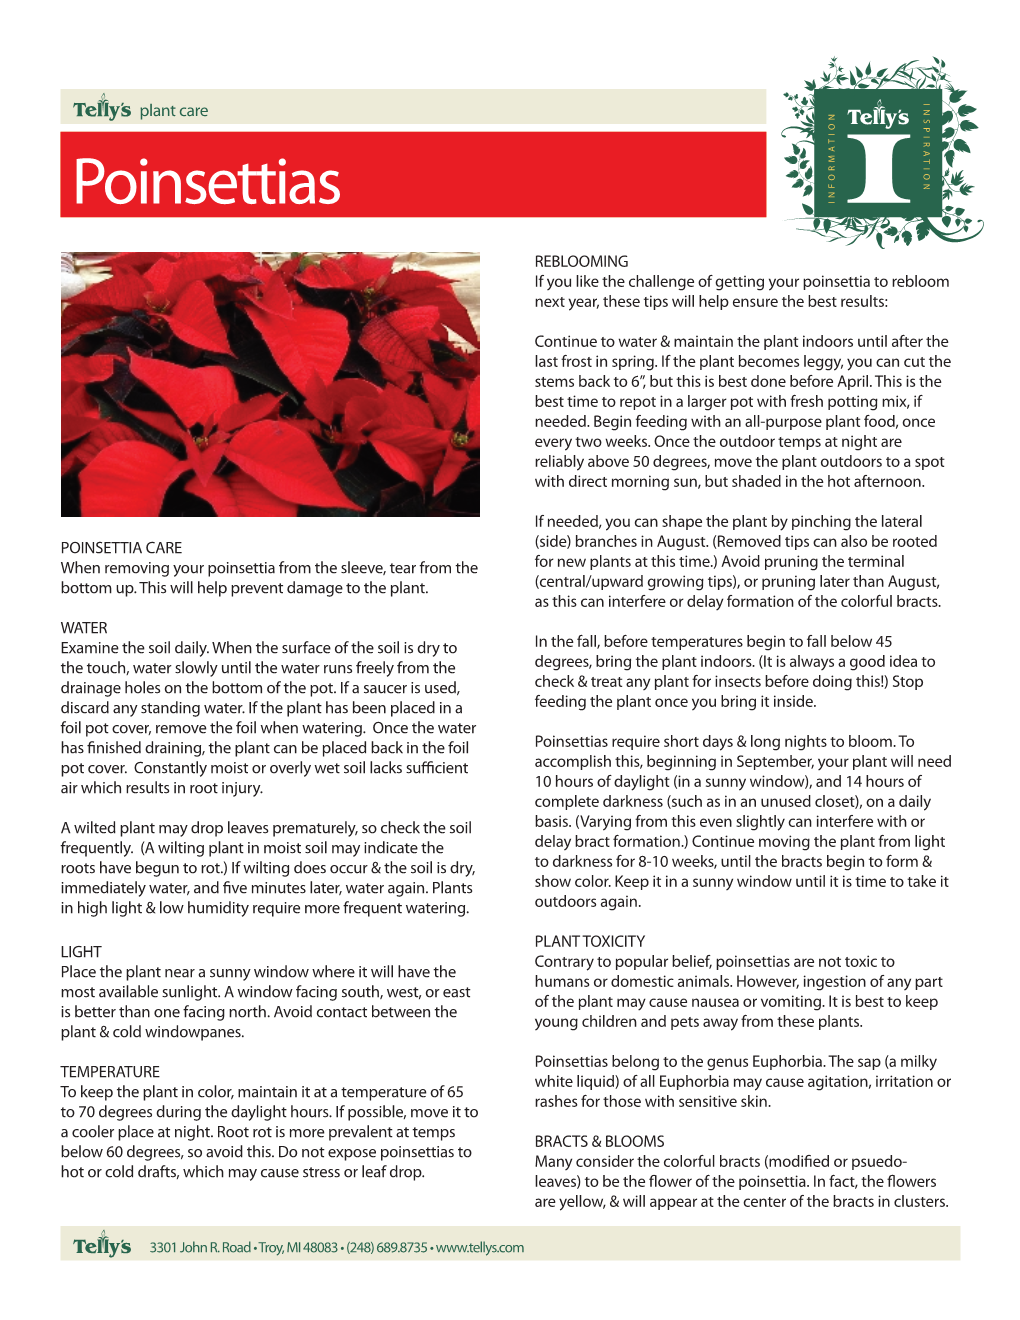 Poinsettia Care Sheet